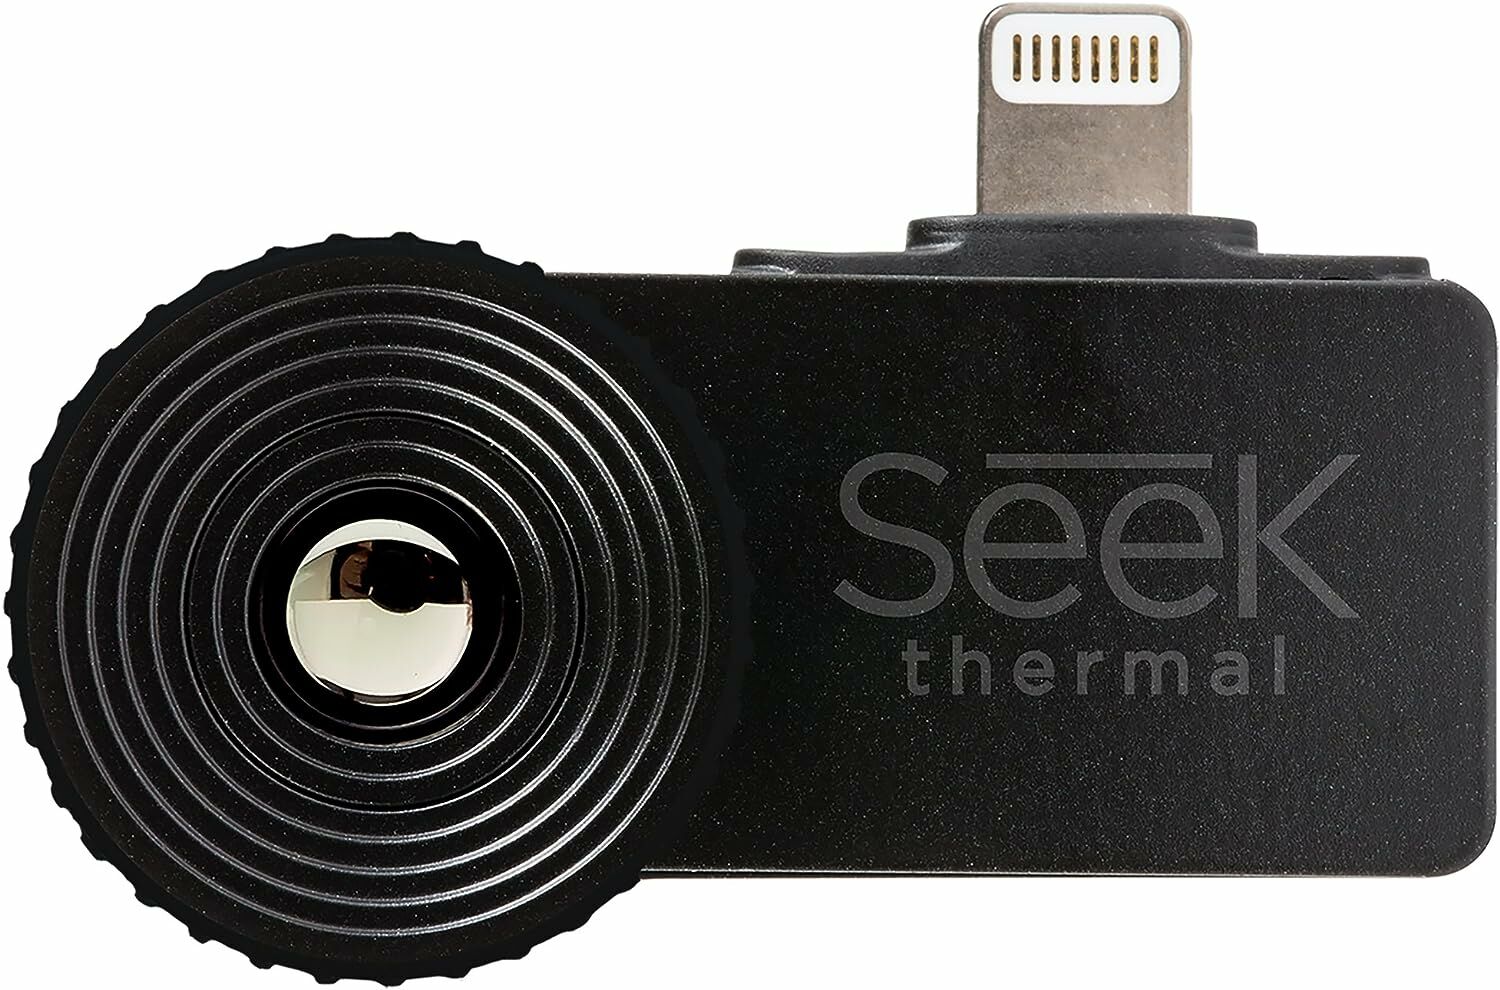 Seek Thermal CompactXR -Termal Kamera - iOS (LT-AAA)